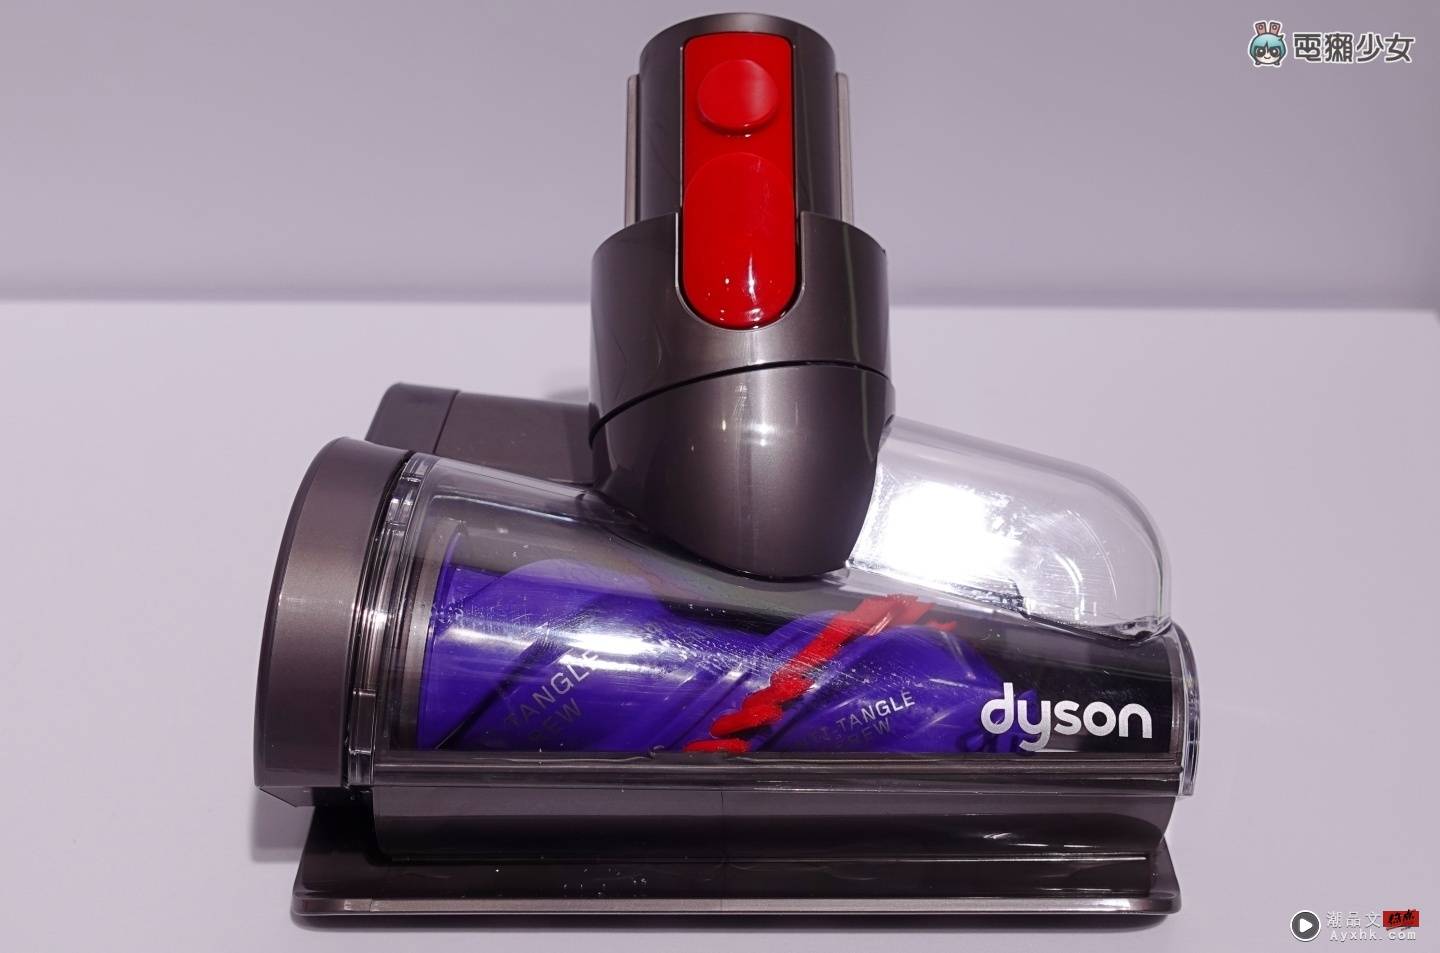 出门｜Dyson V12 Detect Slim 手持吸尘器正式登台！雷射侦测、声学感应及灰尘分类统计 三大功能有感升级！ 数码科技 图11张